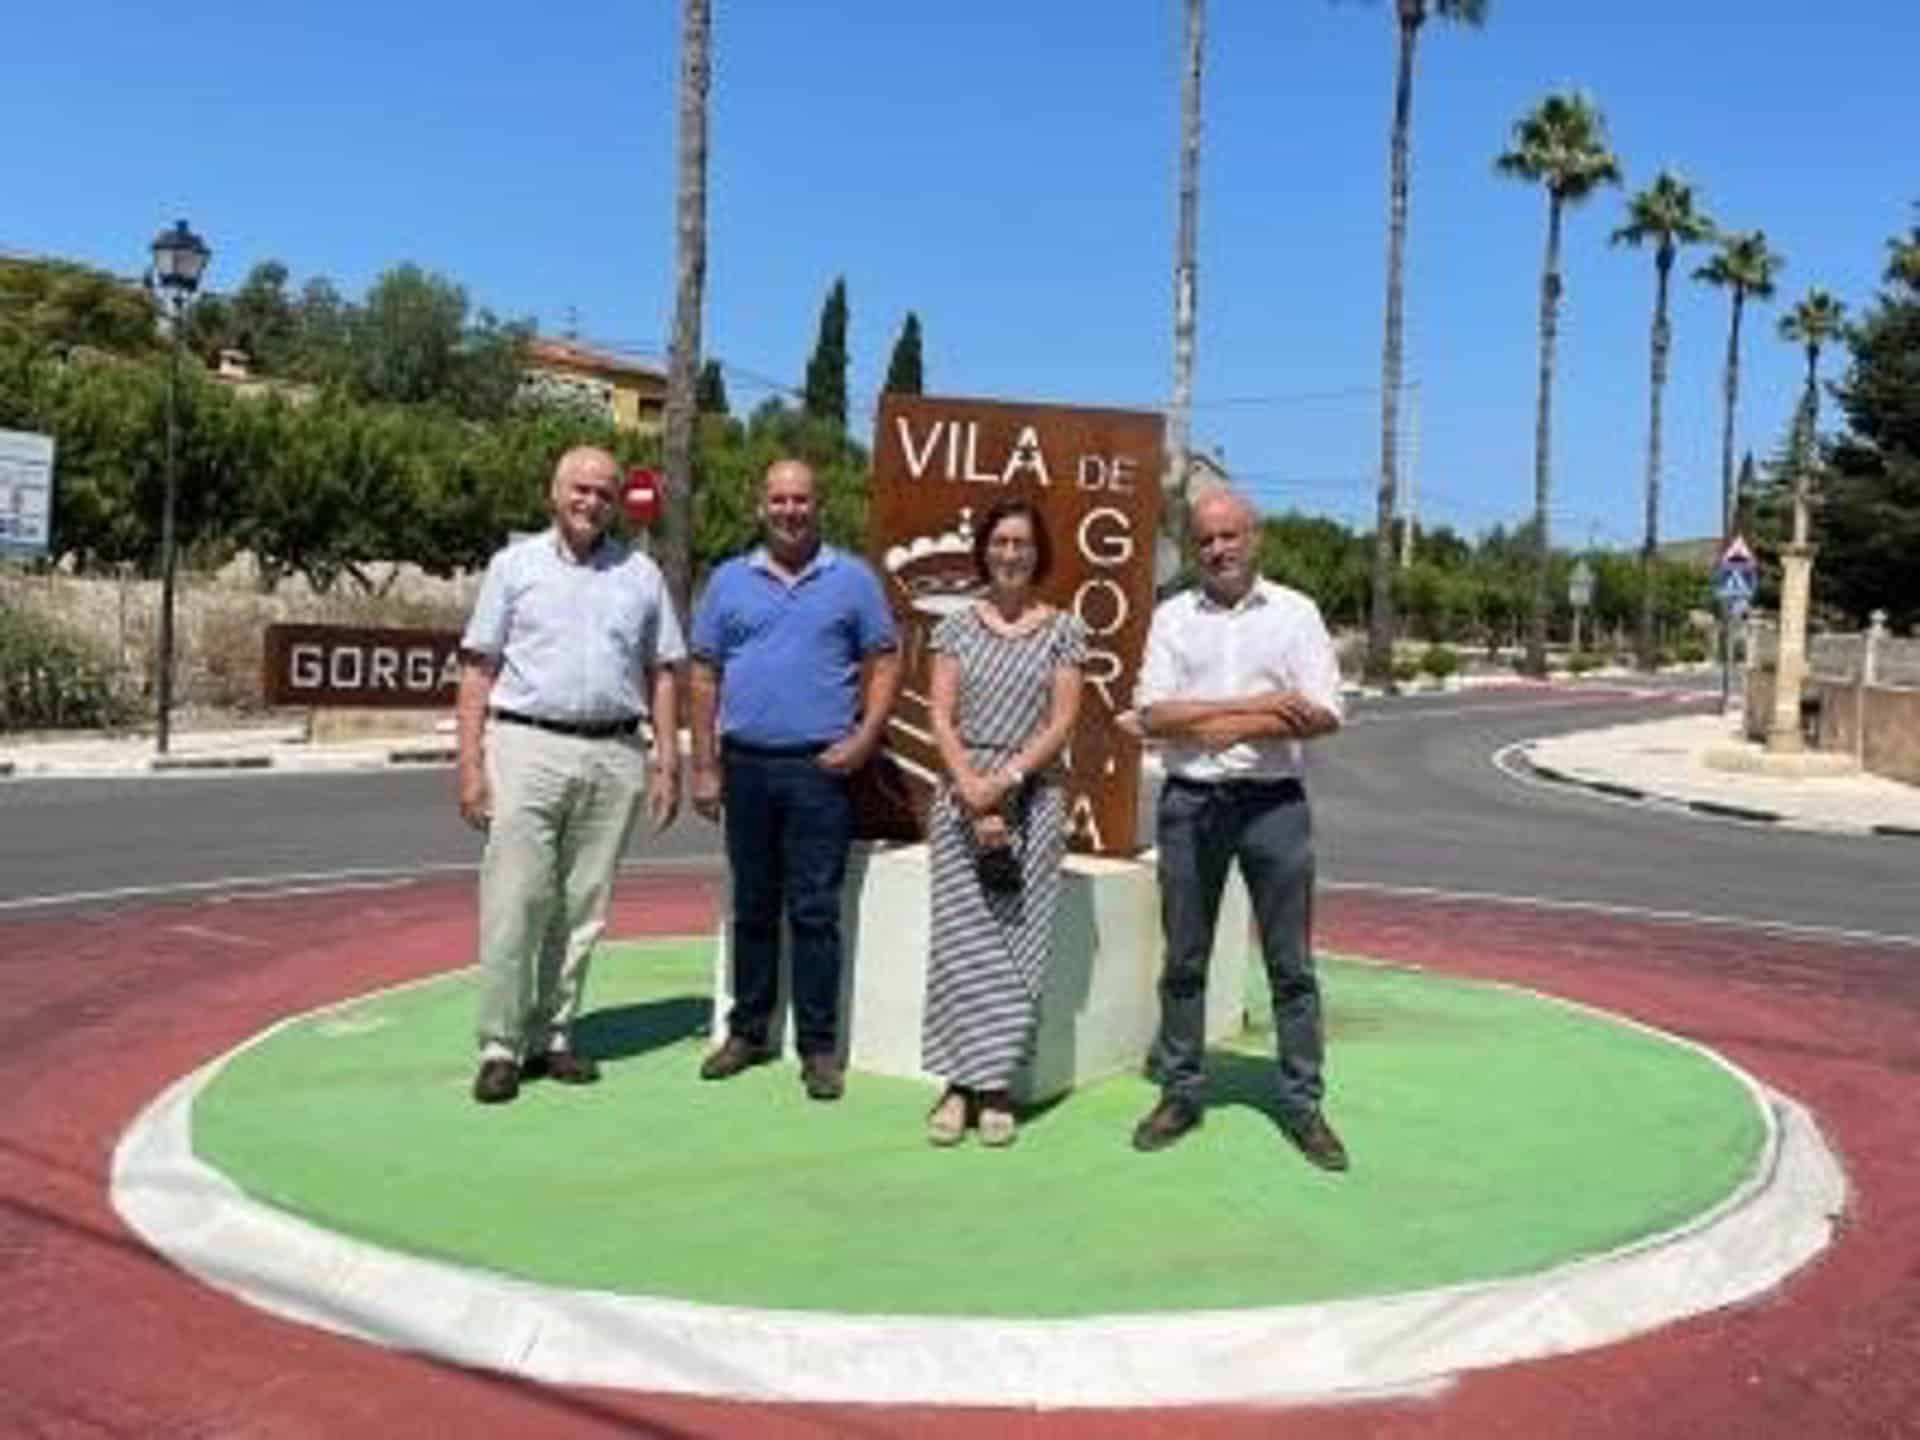 Generalitat finaliza las obras del paseo peatonal y mejora de la seguridad vial de la CV-710 en Gorga y Fageca